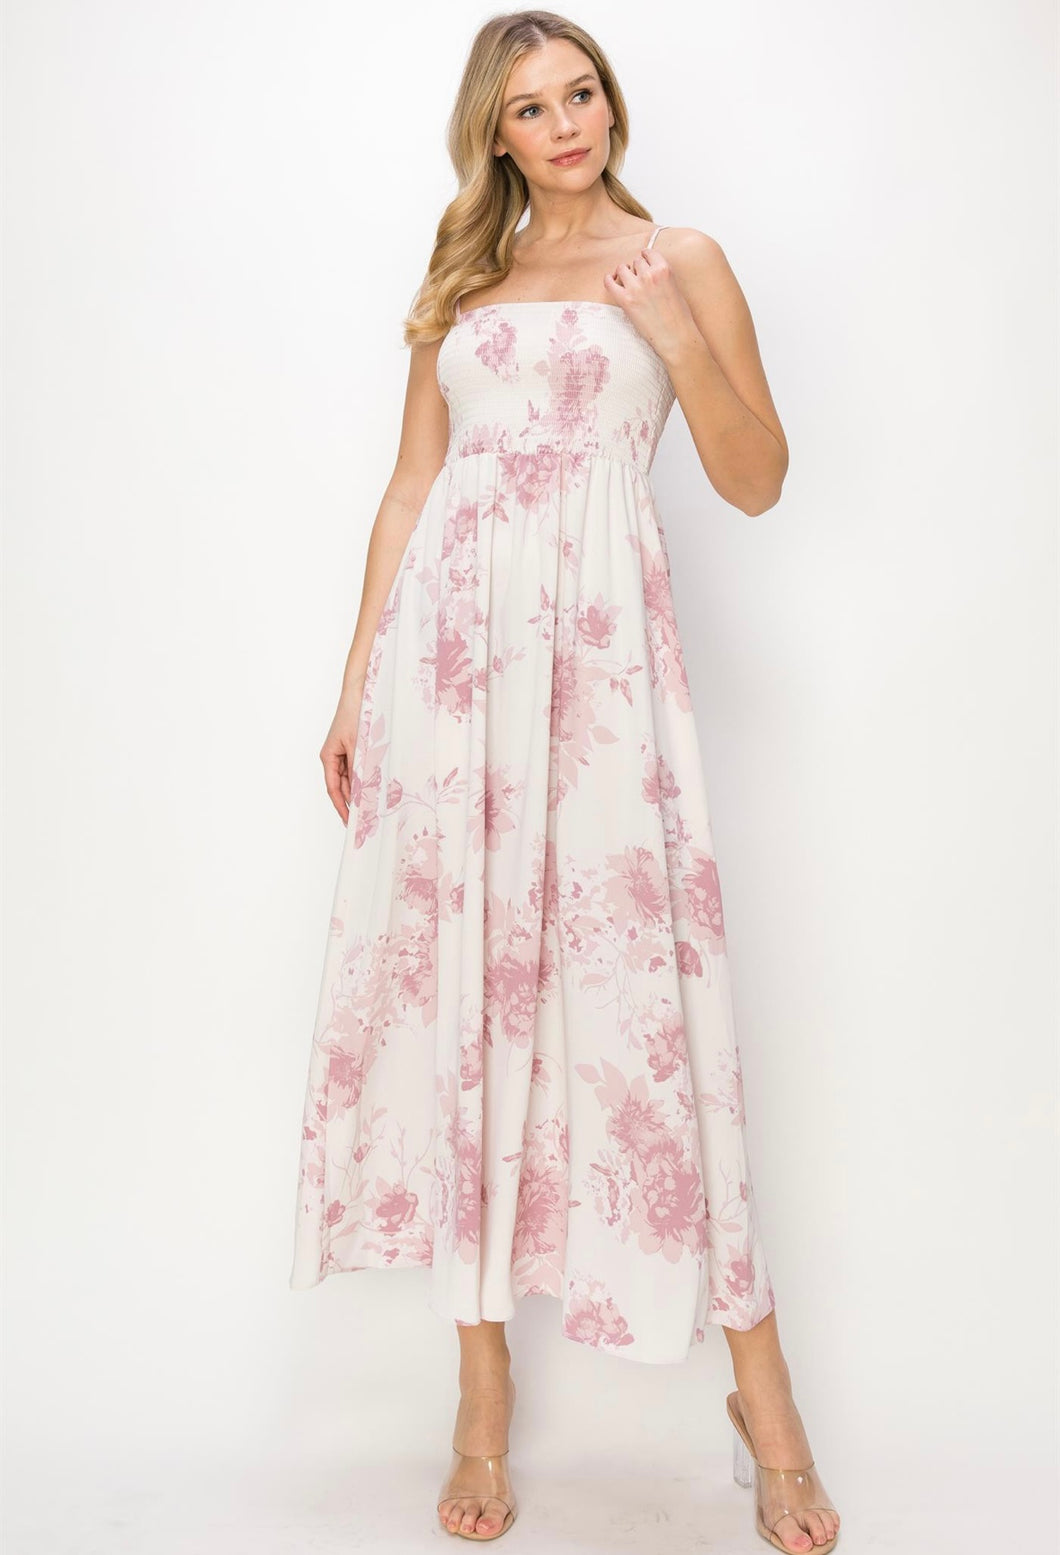 Wht/Mauve Floral Dress